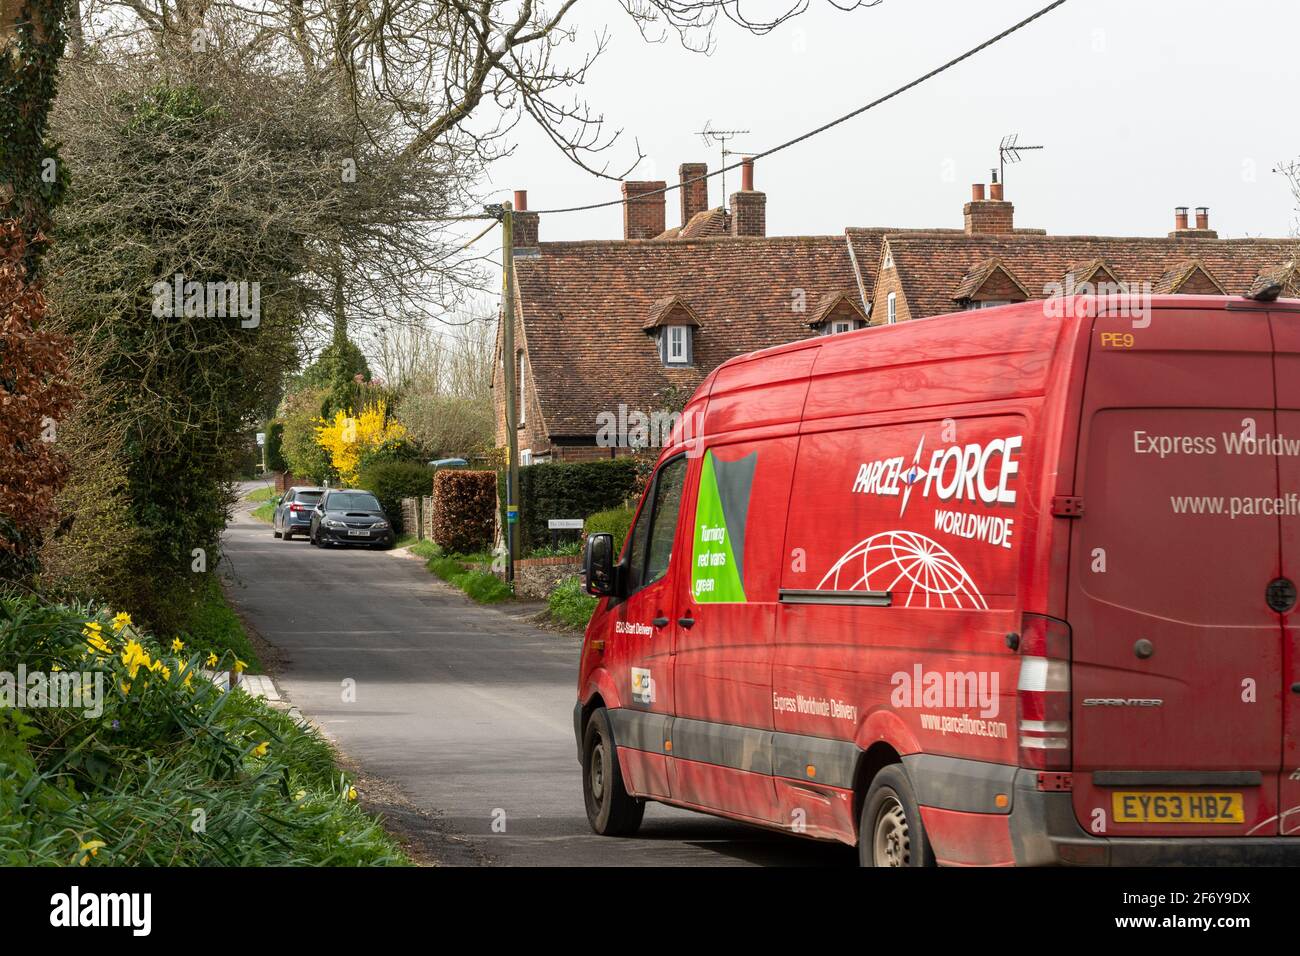 Der weltweite rote Lieferwagen von Parcelforce fährt durch das Dorf Dummer in Hampshire, England, Großbritannien Stockfoto